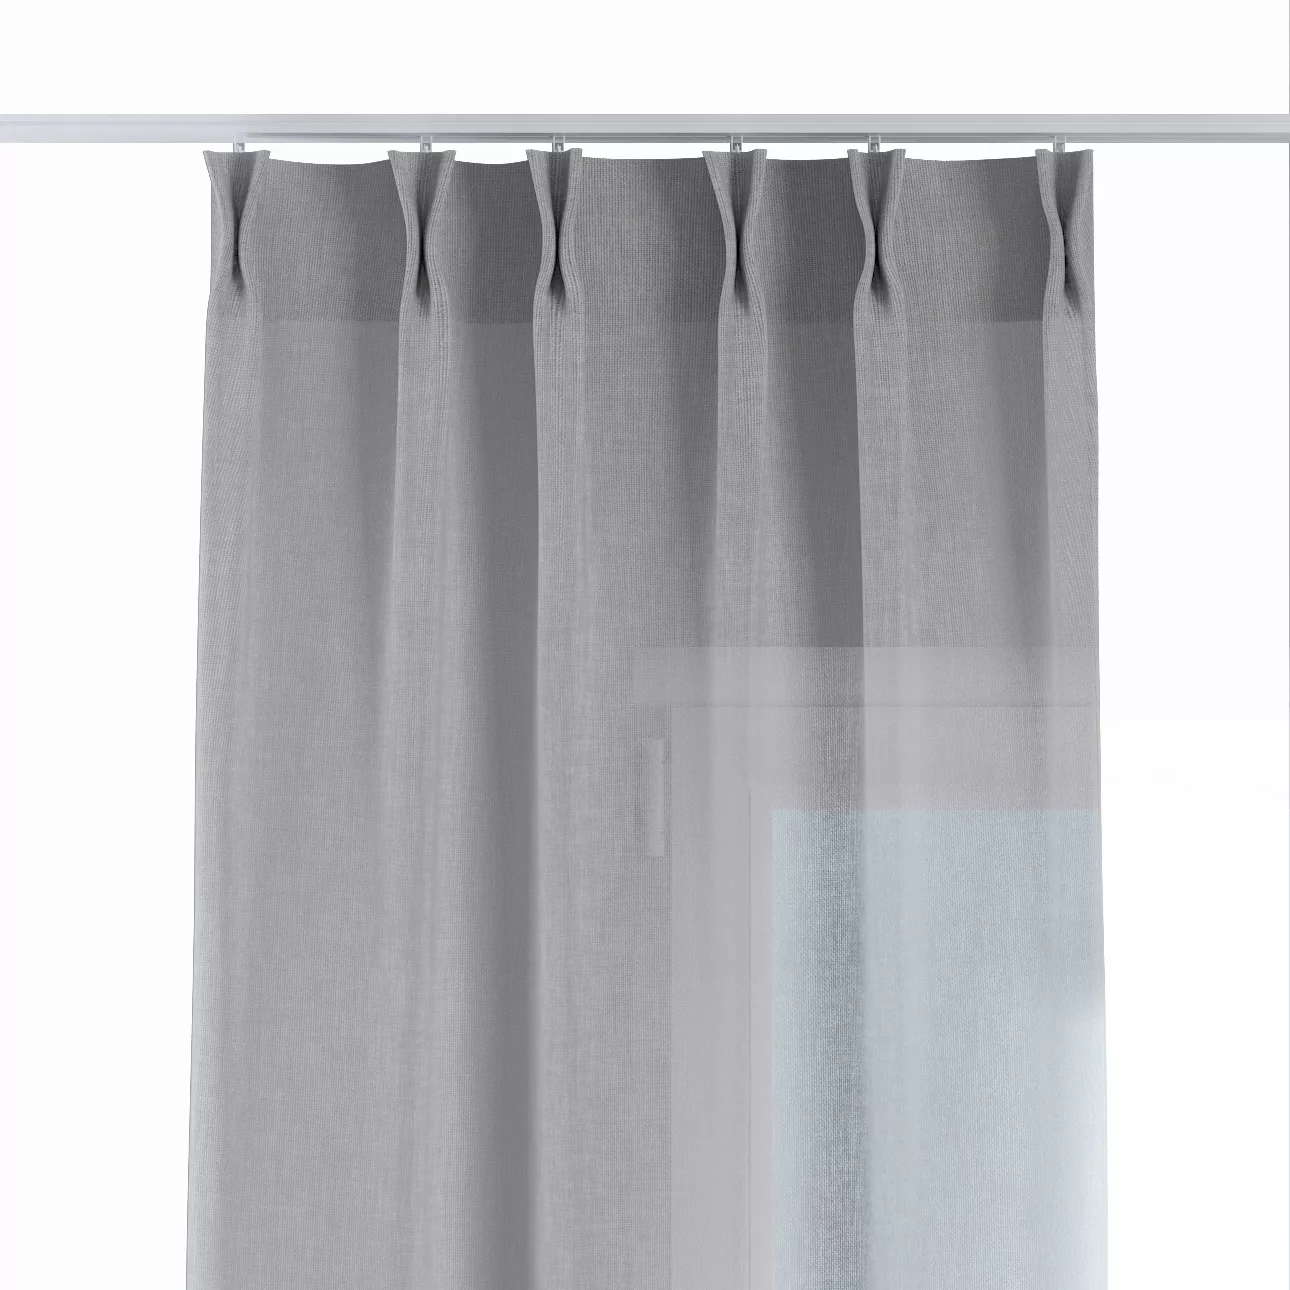 Vorhang mit flämischen 2-er Falten, greige, Sensual Premium (144-39) günstig online kaufen